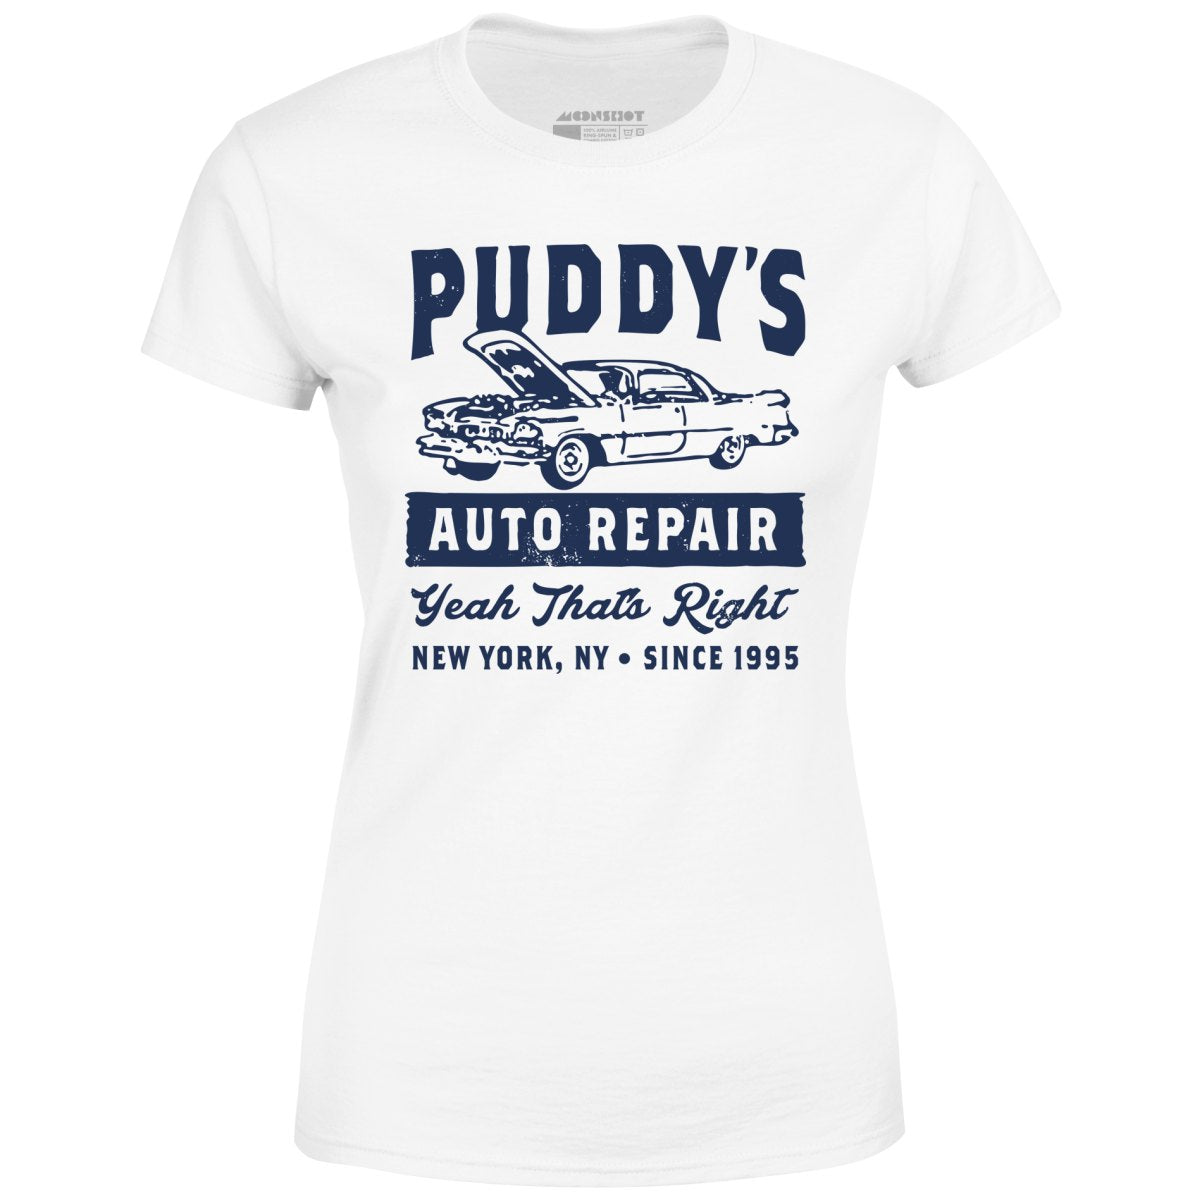 Puddy's Auto Repair - Women's T-Shirt